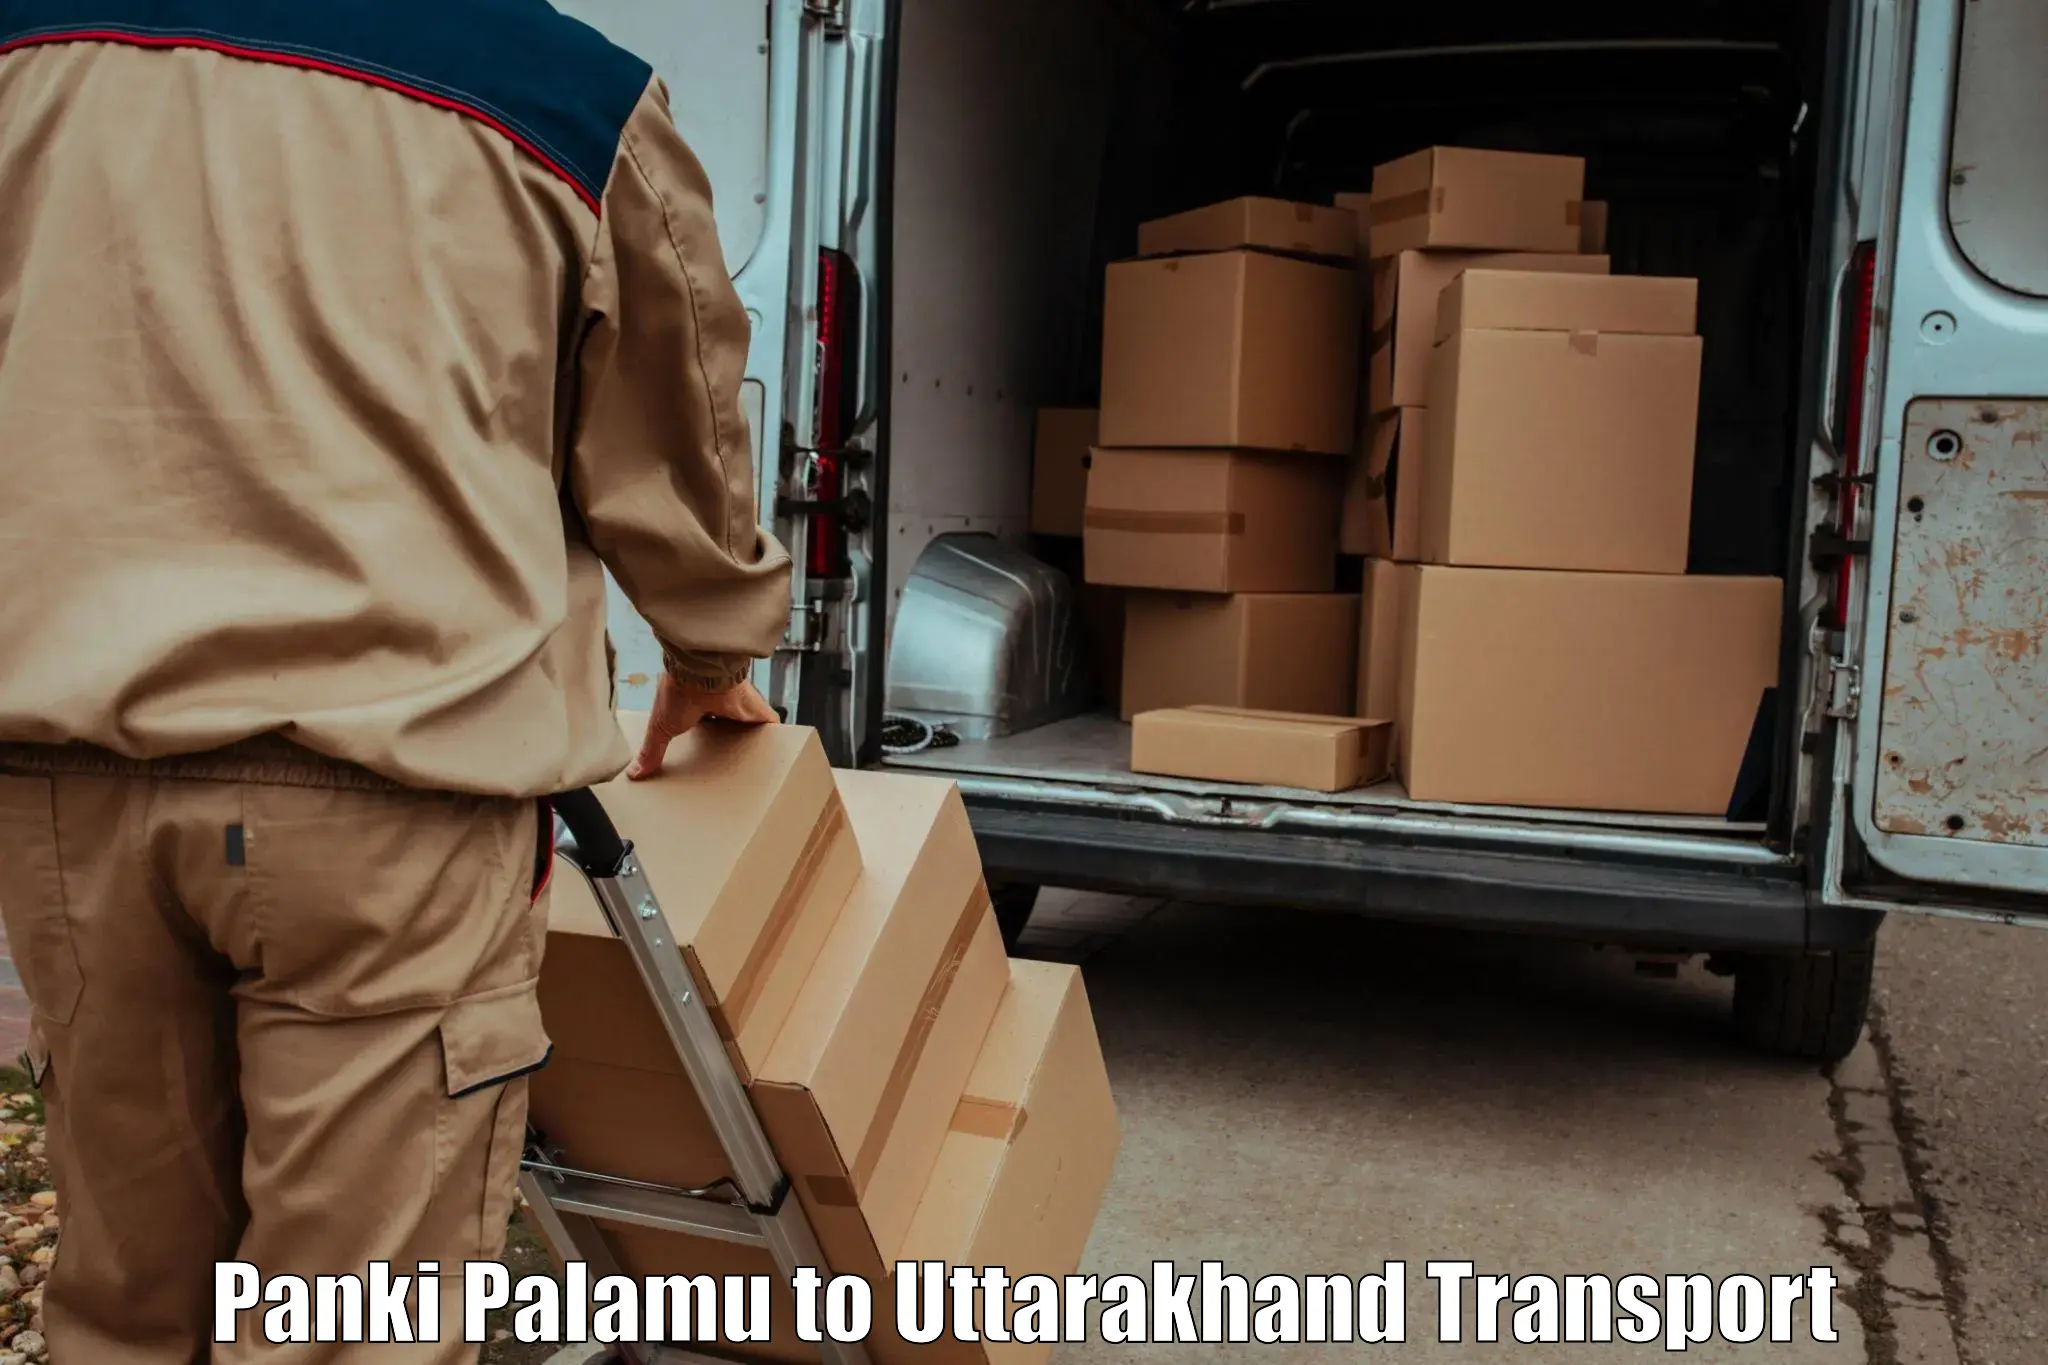 Vehicle courier services Panki Palamu to Rishikesh